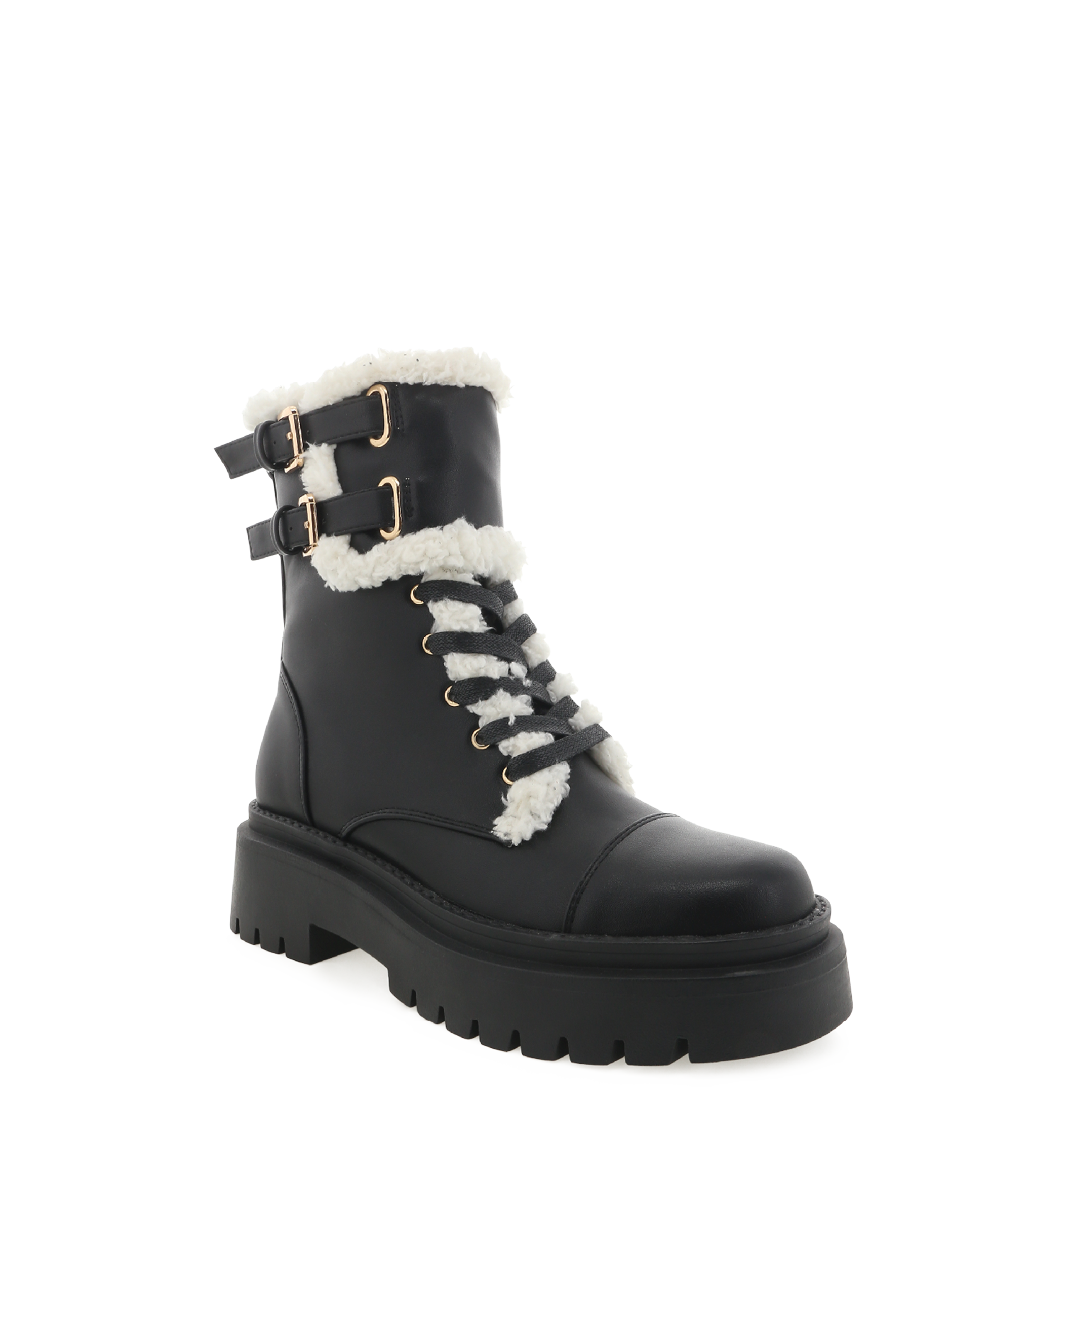 FERREL - BLACK-Boots-Billini-BILLINI USA